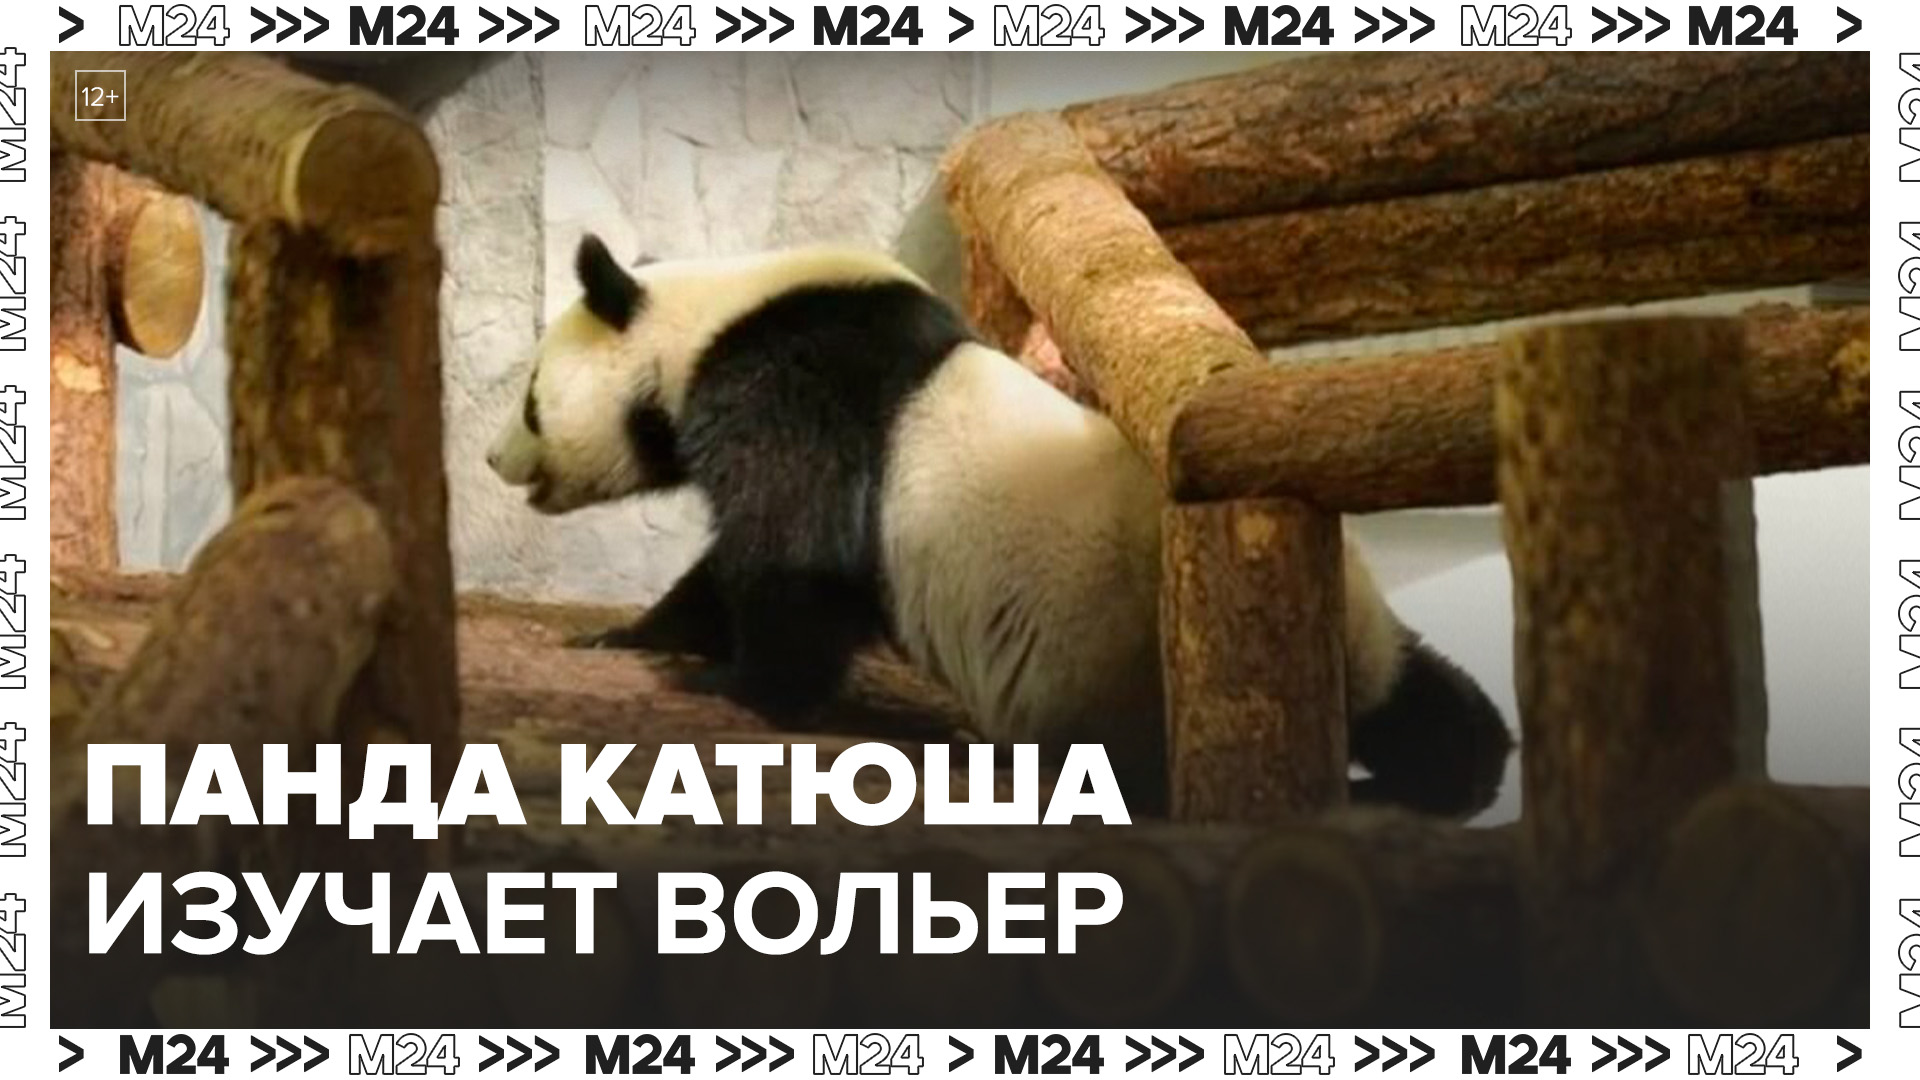 В Московском зоопарке показали, как панда Катюша залезает на высокую конструкцию - Москва 24